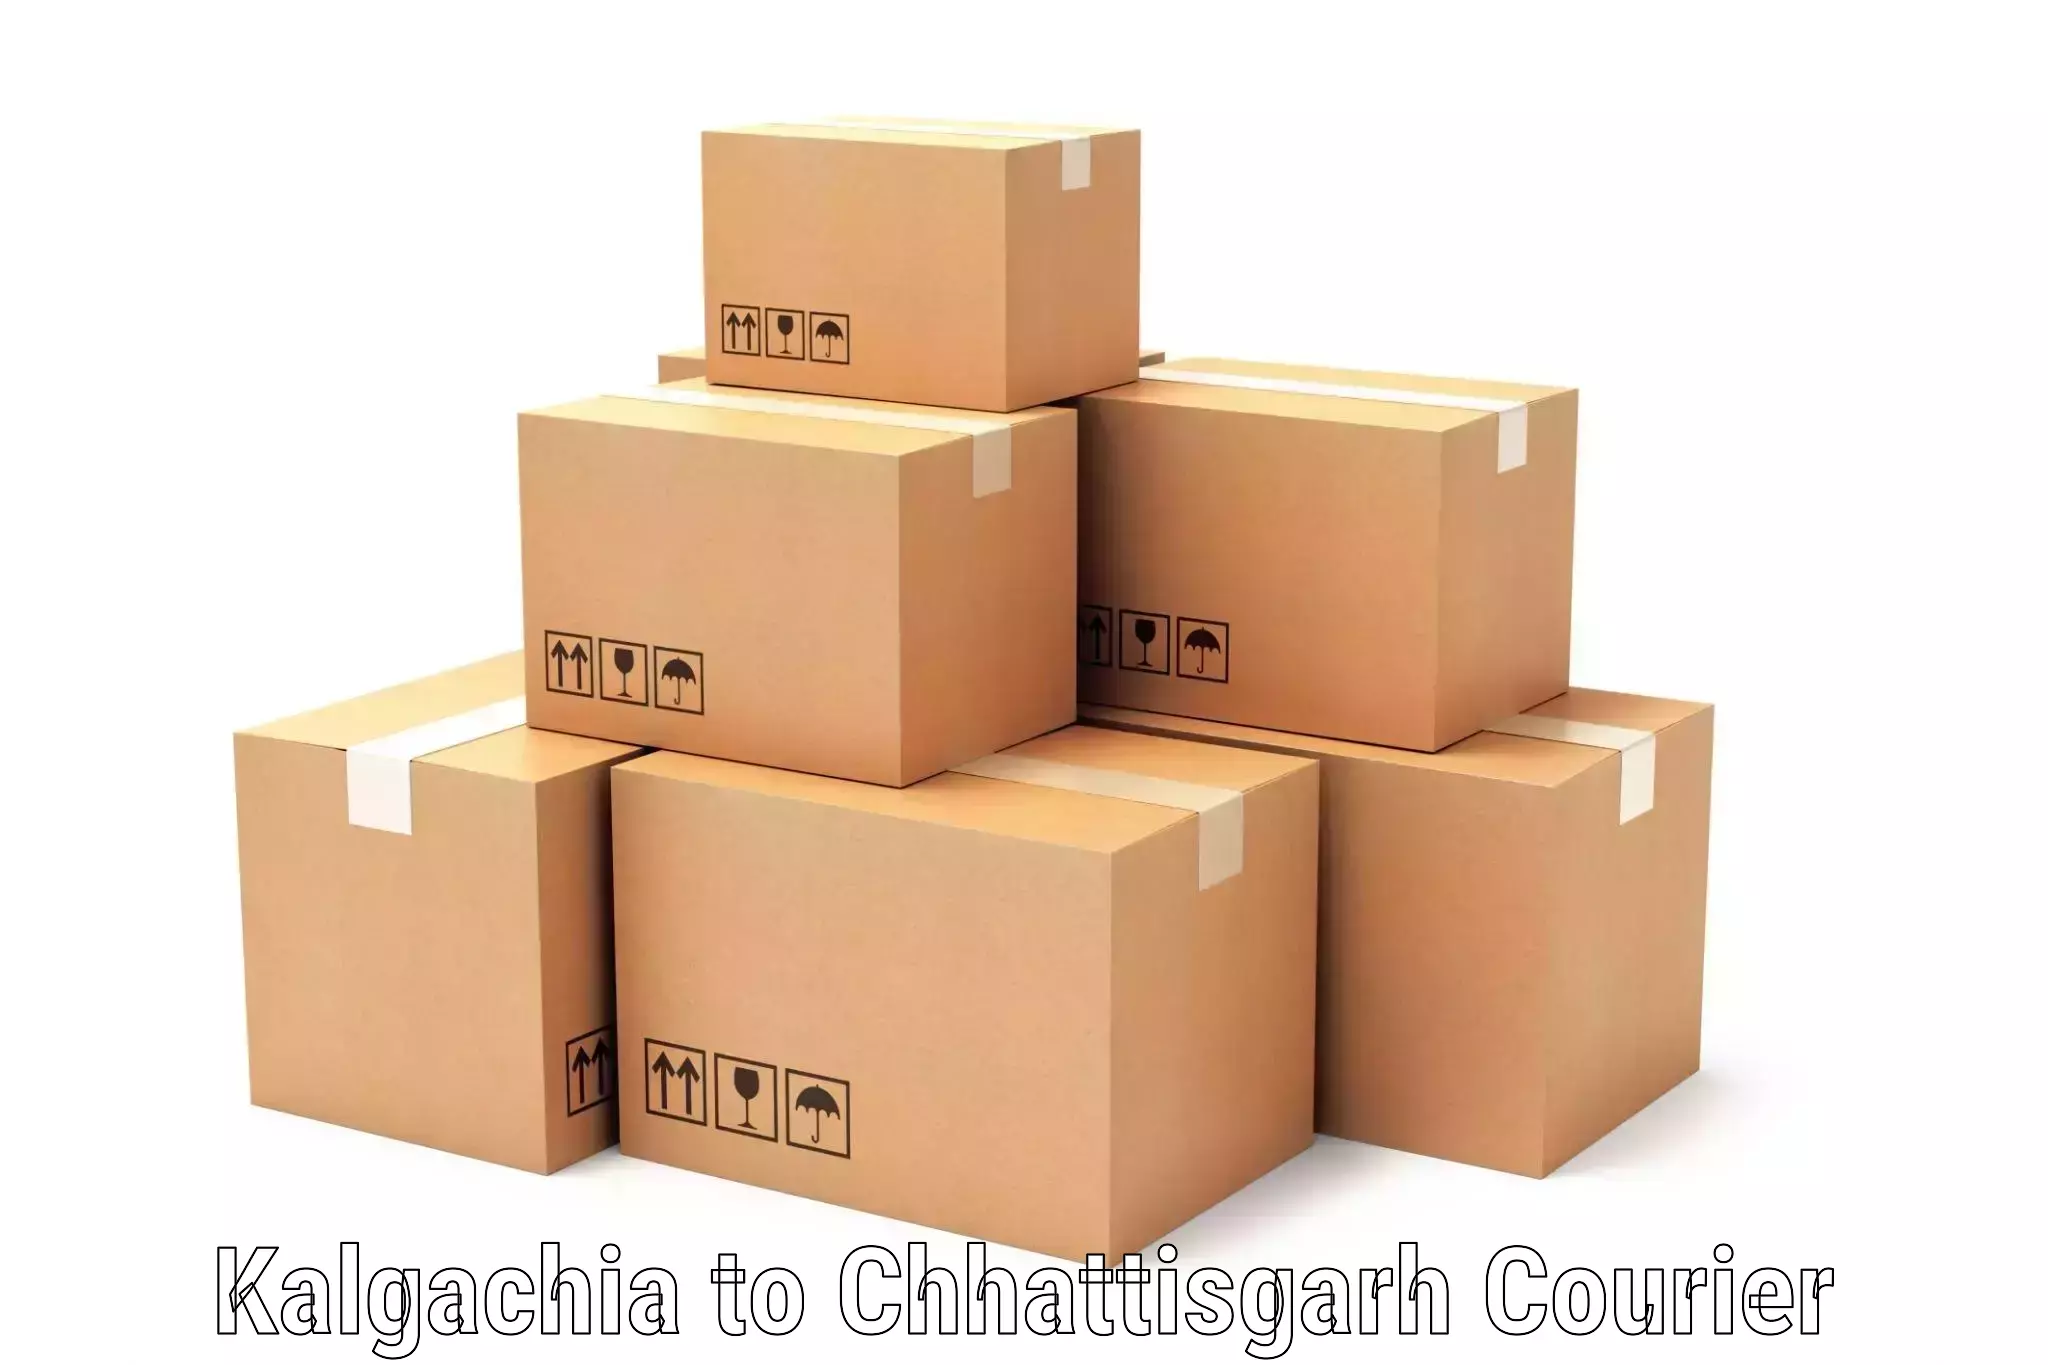 Reliable courier service Kalgachia to Chhattisgarh